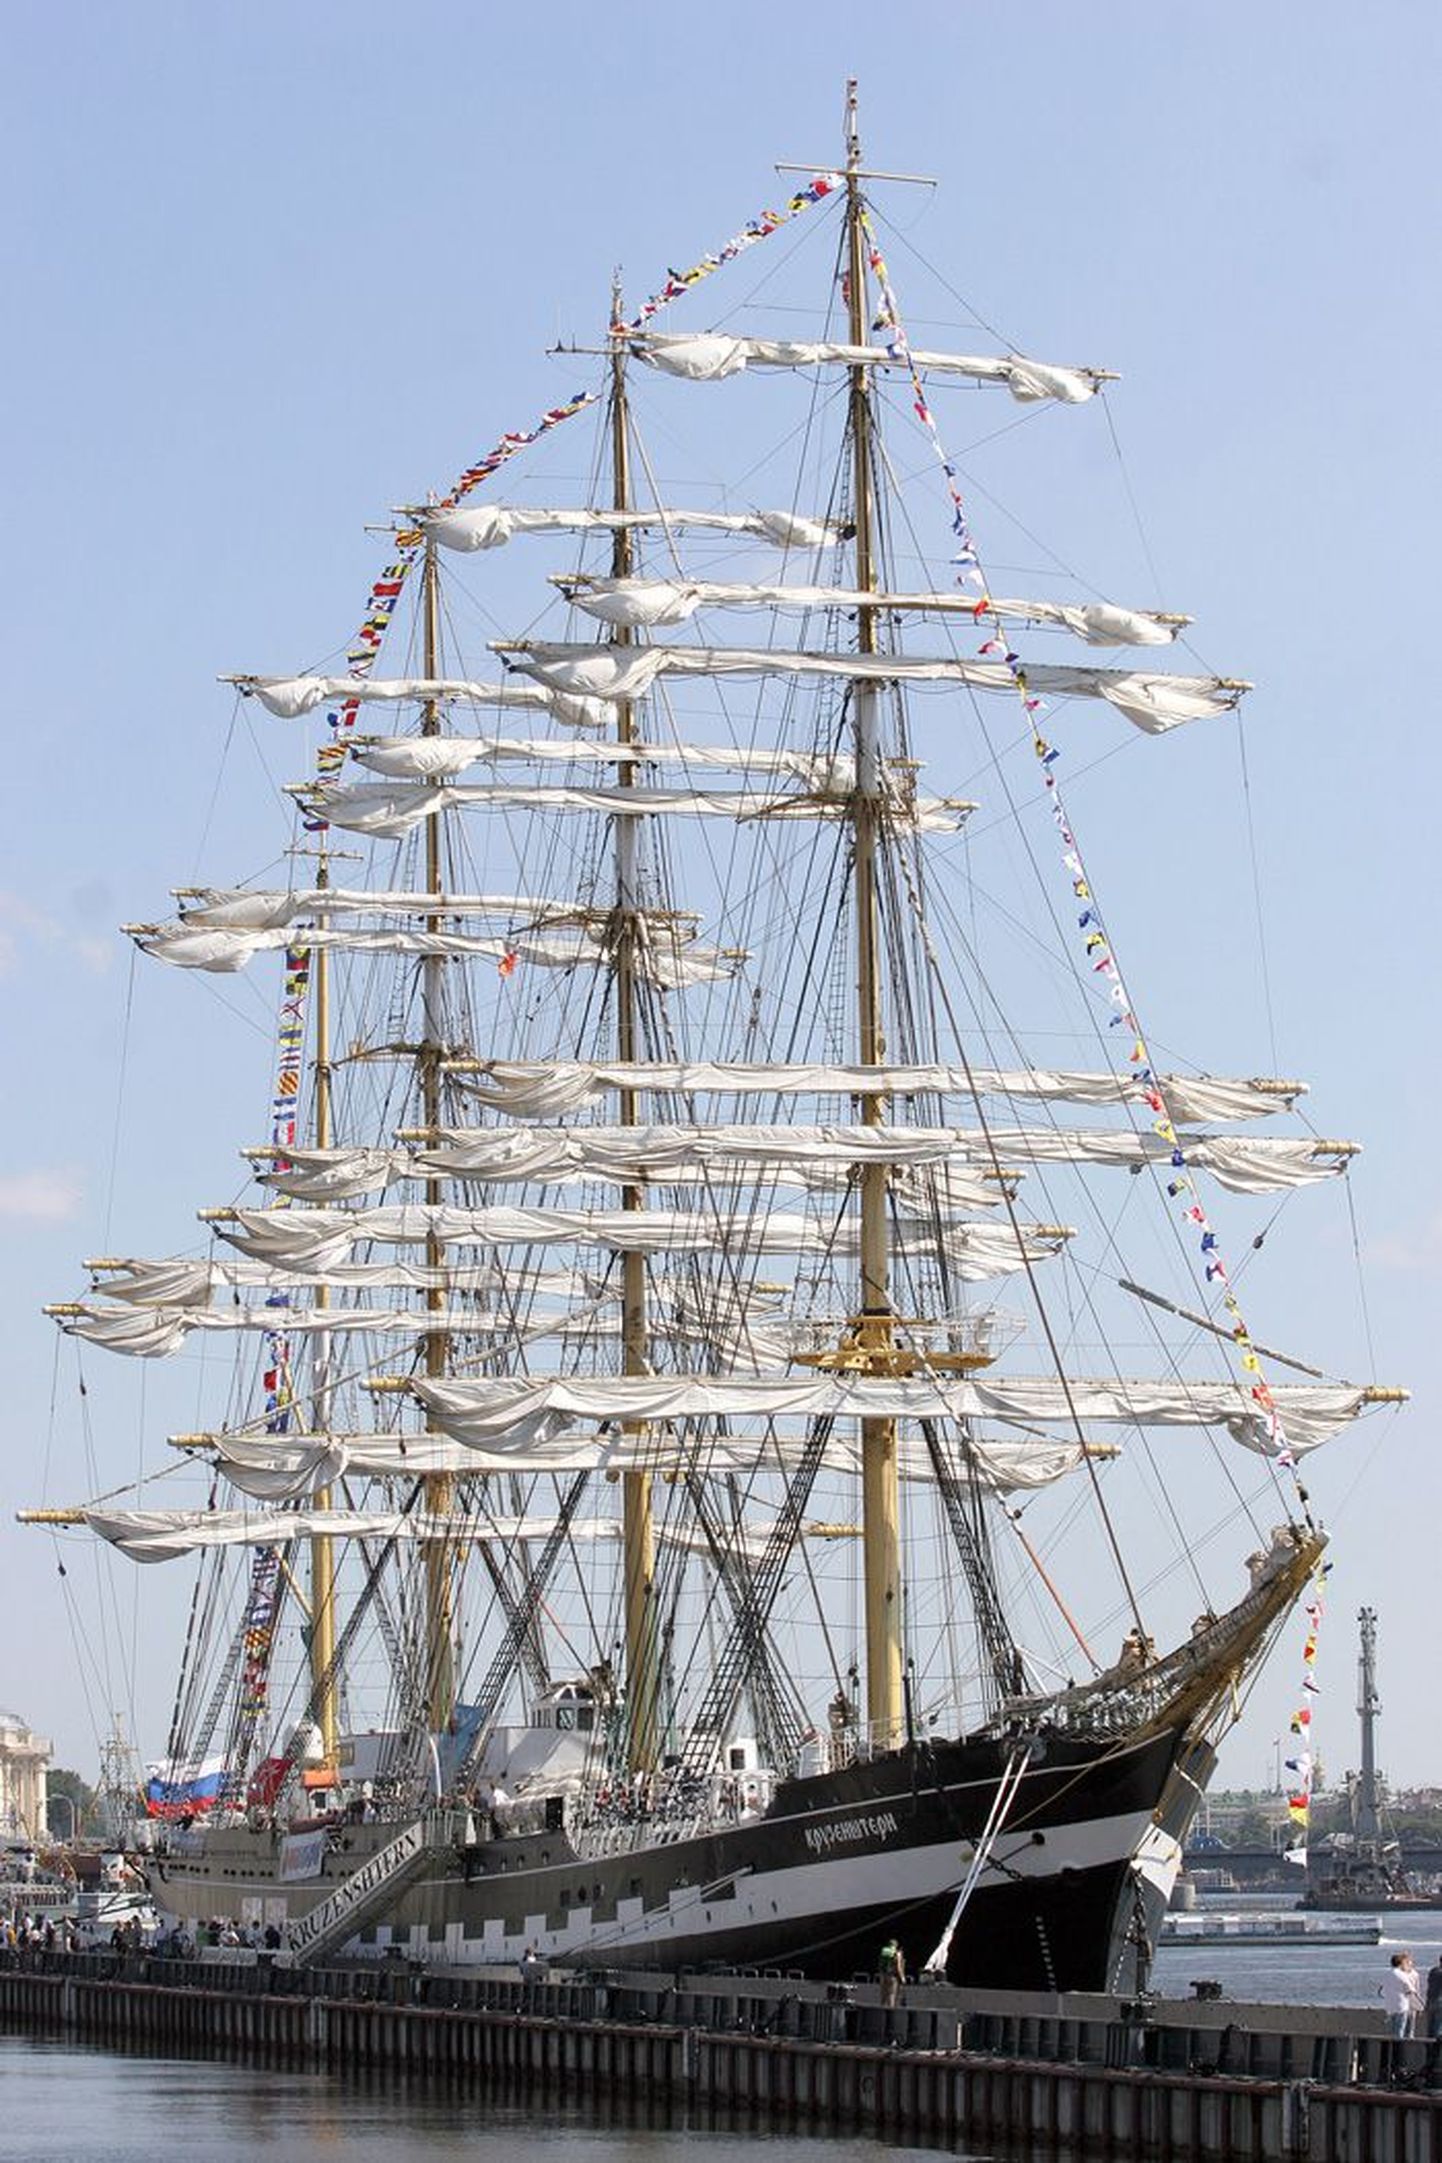 Прибытие уникального парусника в Таллиннский порт будет самым ярким событием Дней моря.